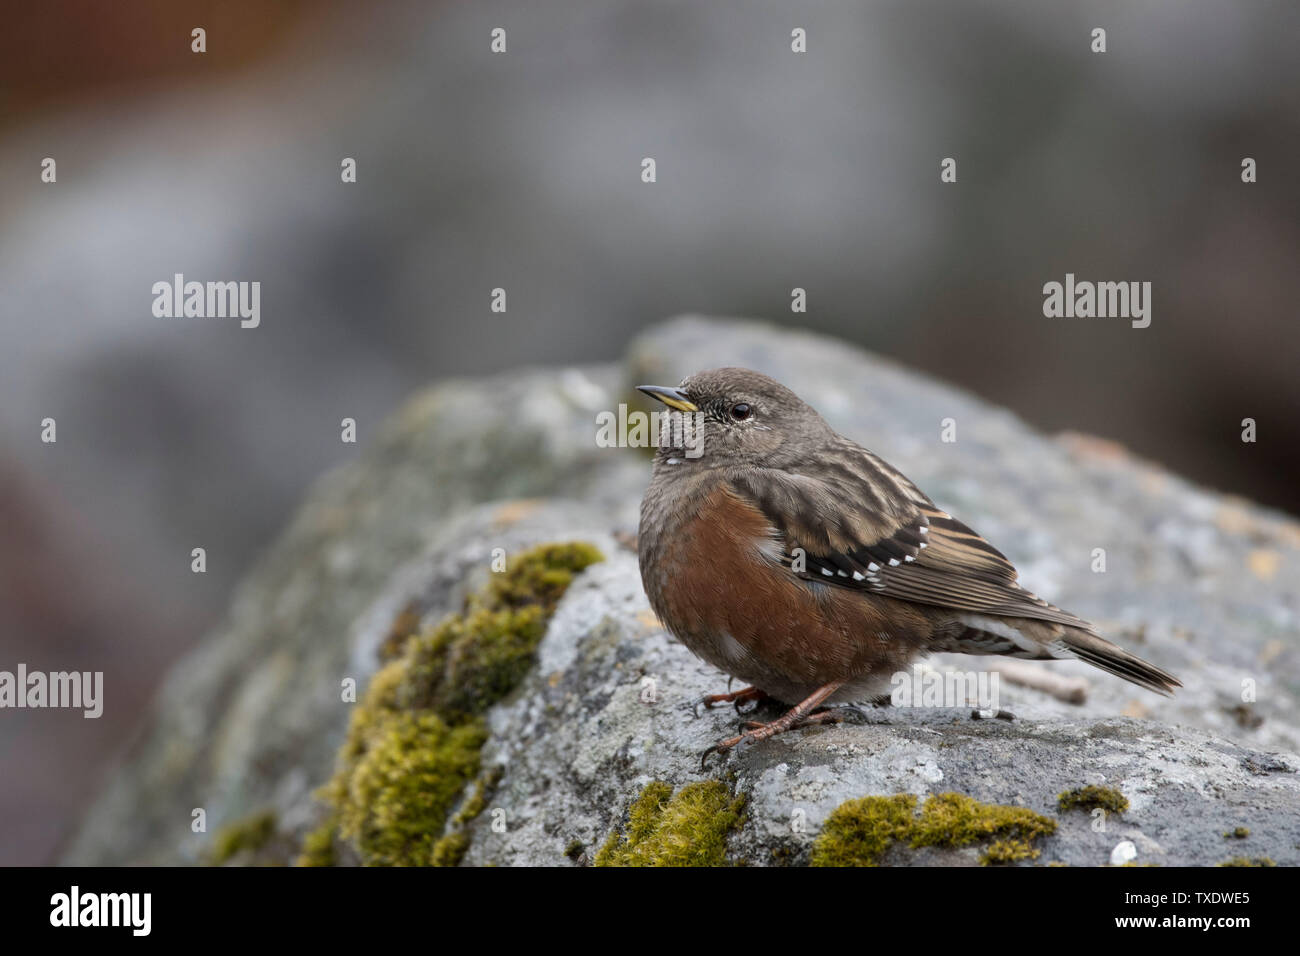 Robin Accentor bird sitting on rock, Uttarakhand, India, Asia Stock Photo